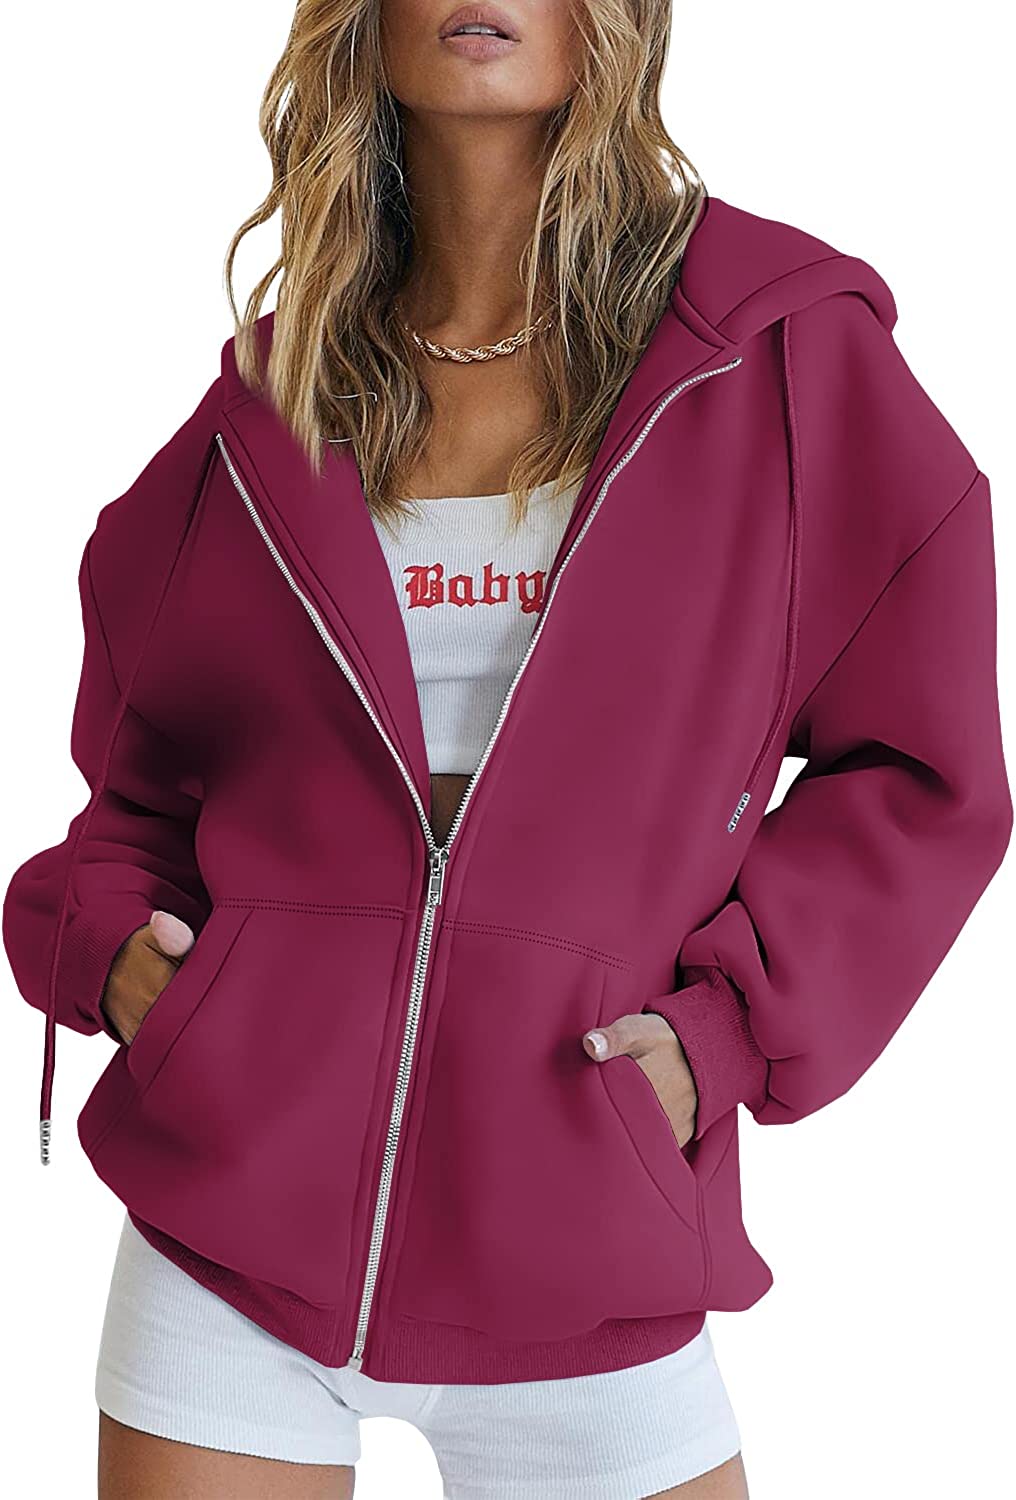 EFAN Women's Cute Hoodies Teen Girl Fall Jacket Oversized